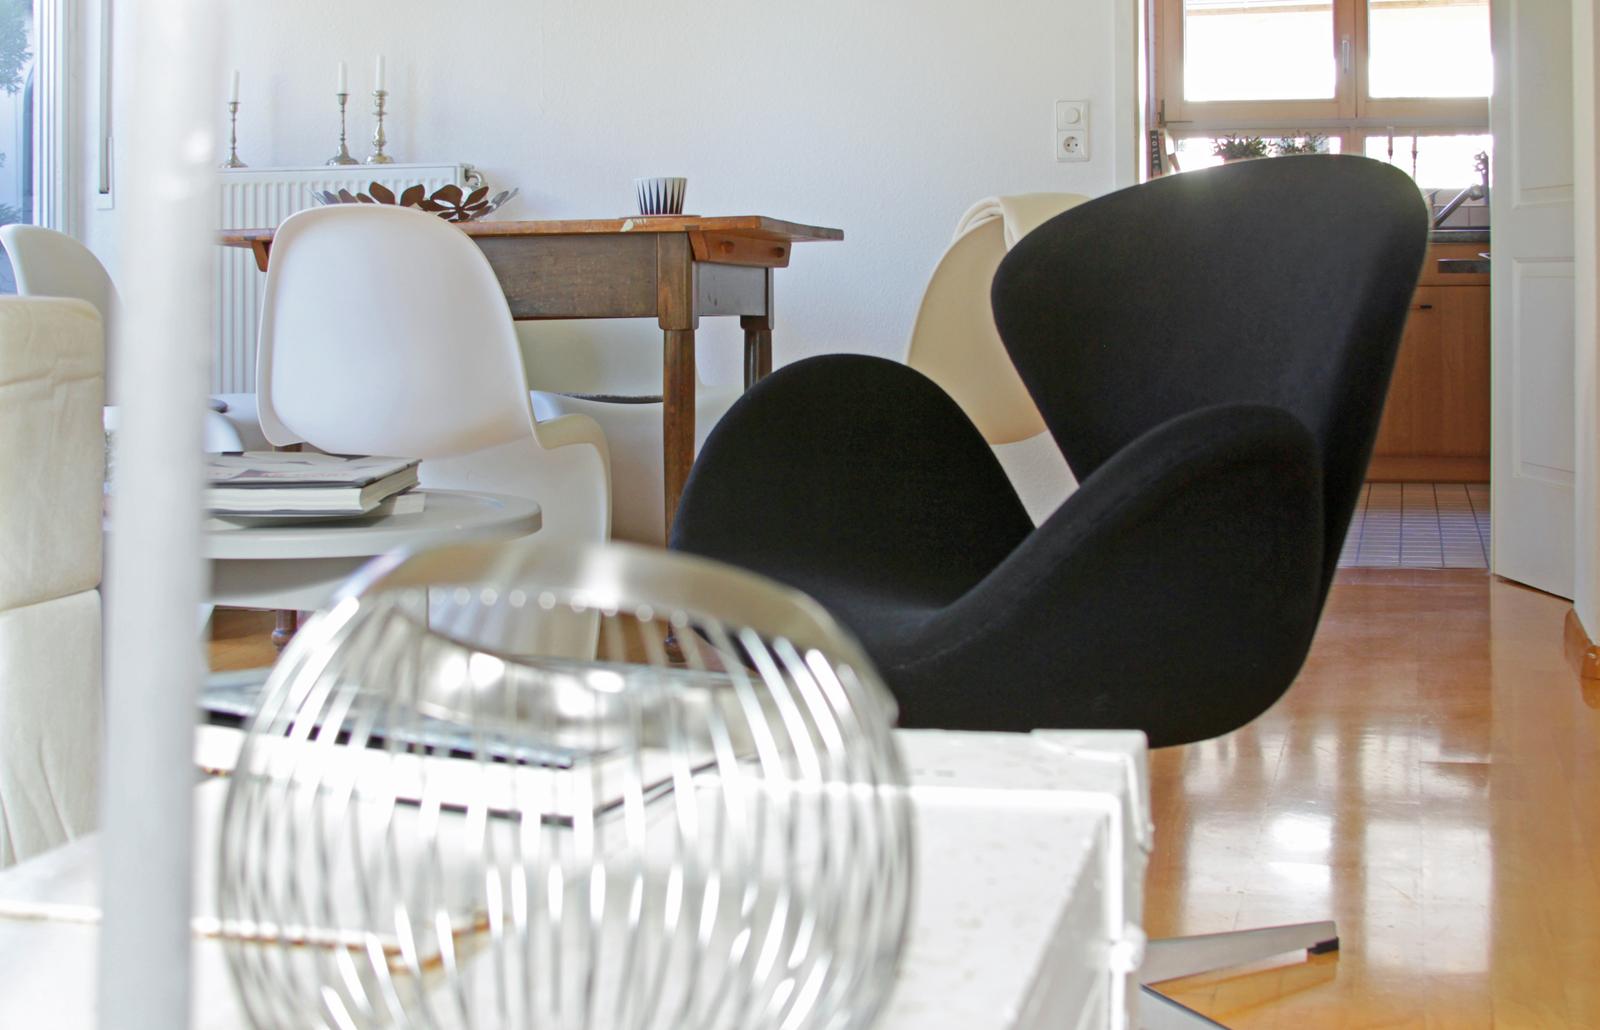 Vitra-Möbel kombiniert mit Antiquitäten #wohngestaltung ©Scheewe-Pfeil